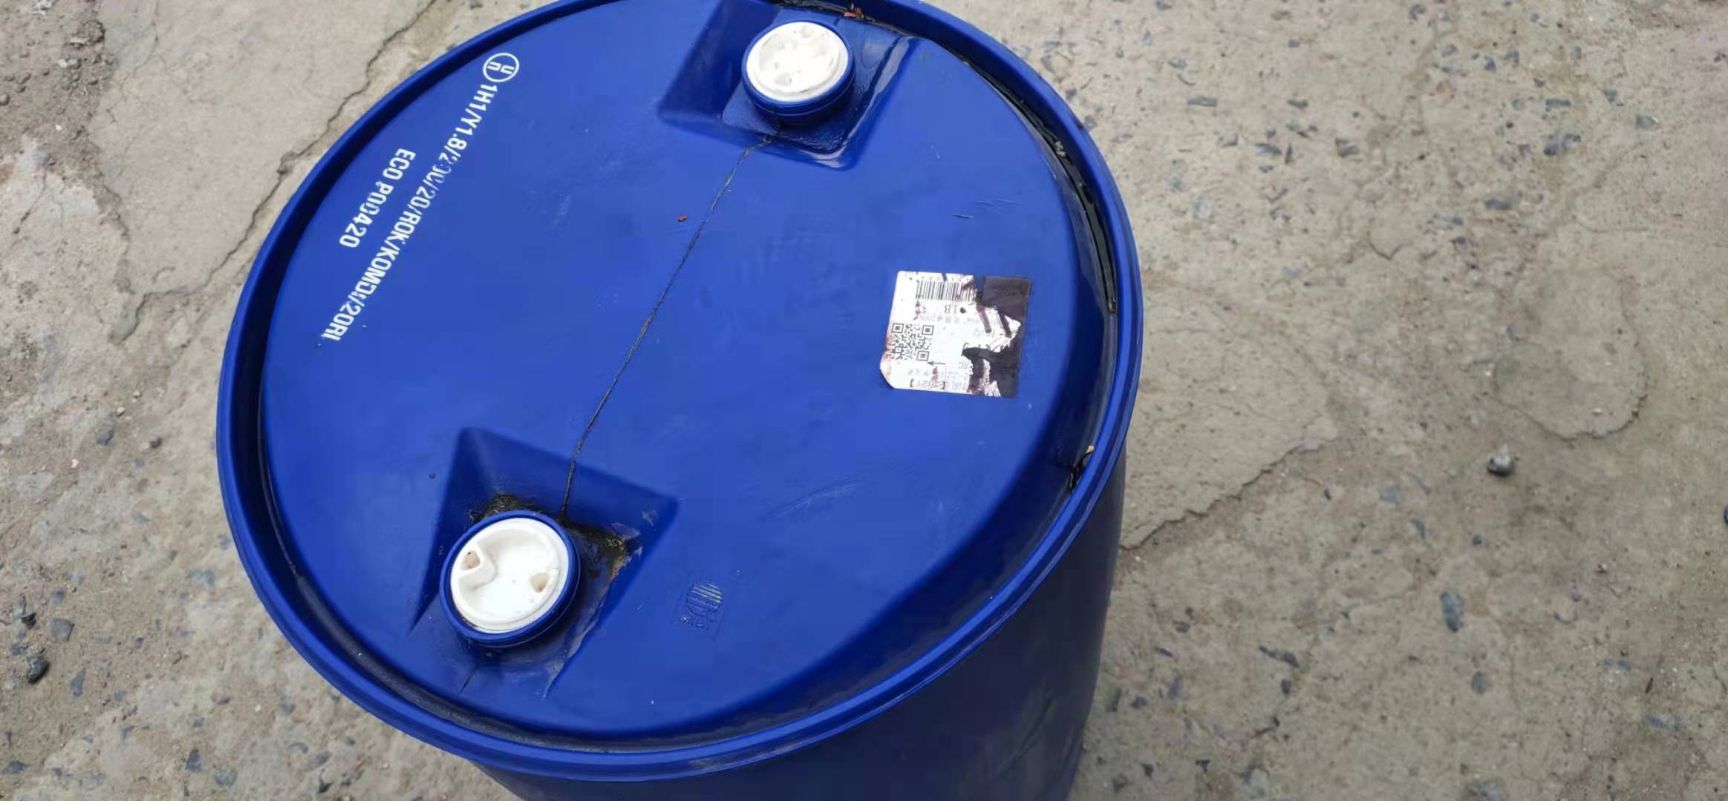 扶沟县蓝色大水桶，装250公斤水。无毒无害，装洗洁精的桶。